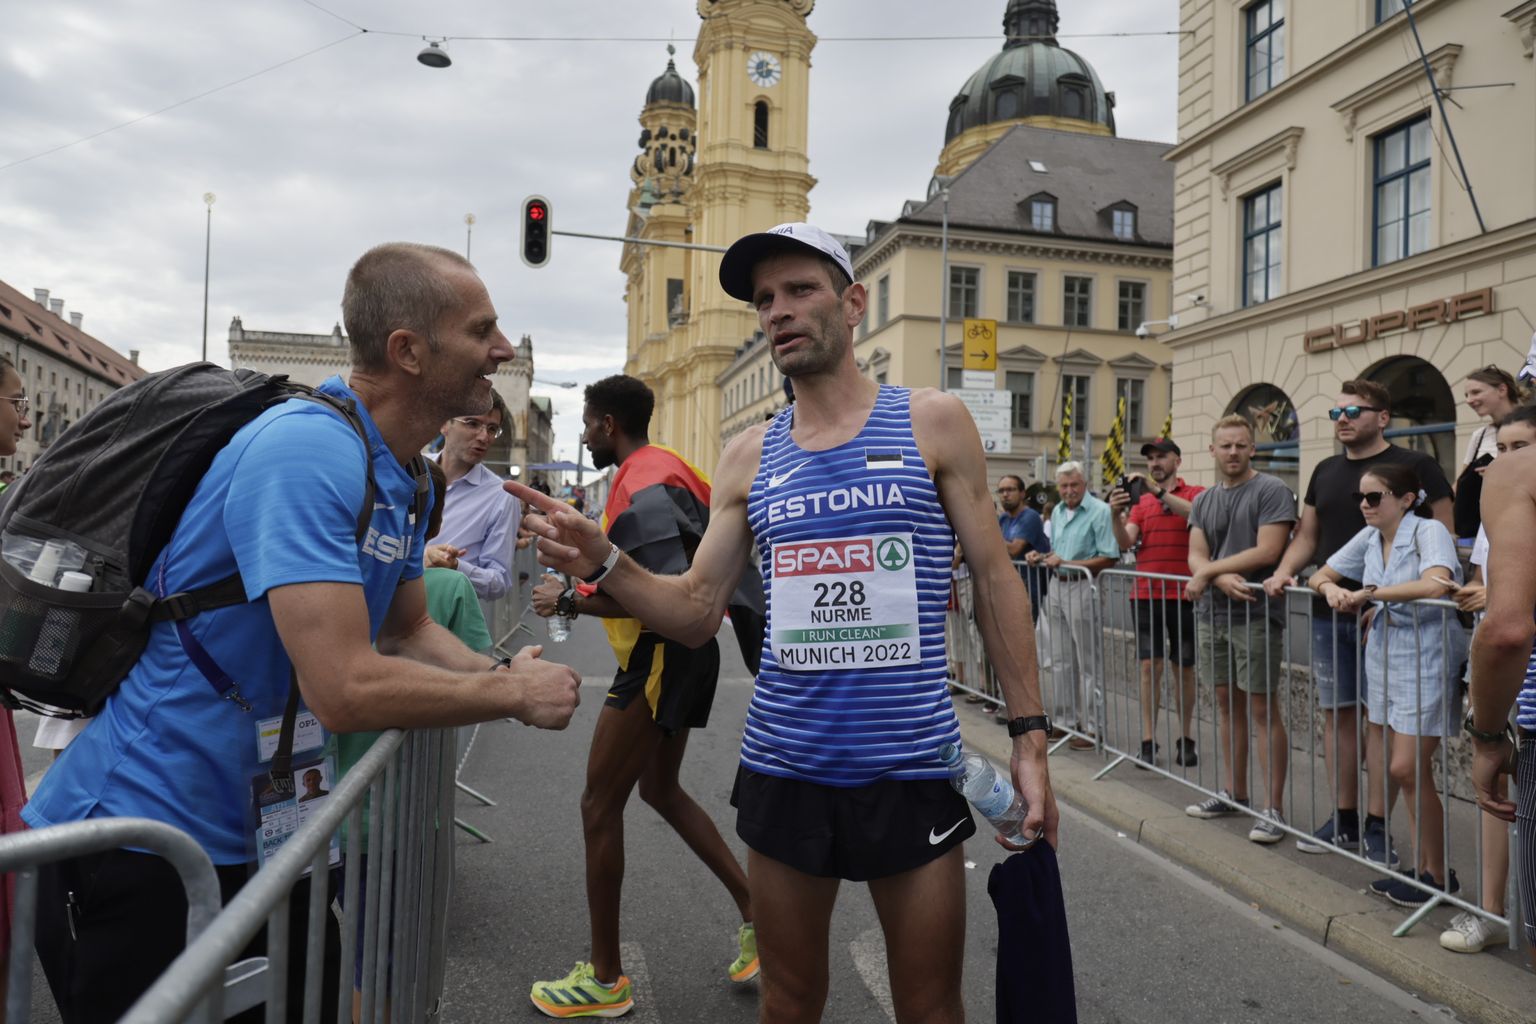 Tiidrek Nurme, Euroopa 11. mees maratonis.